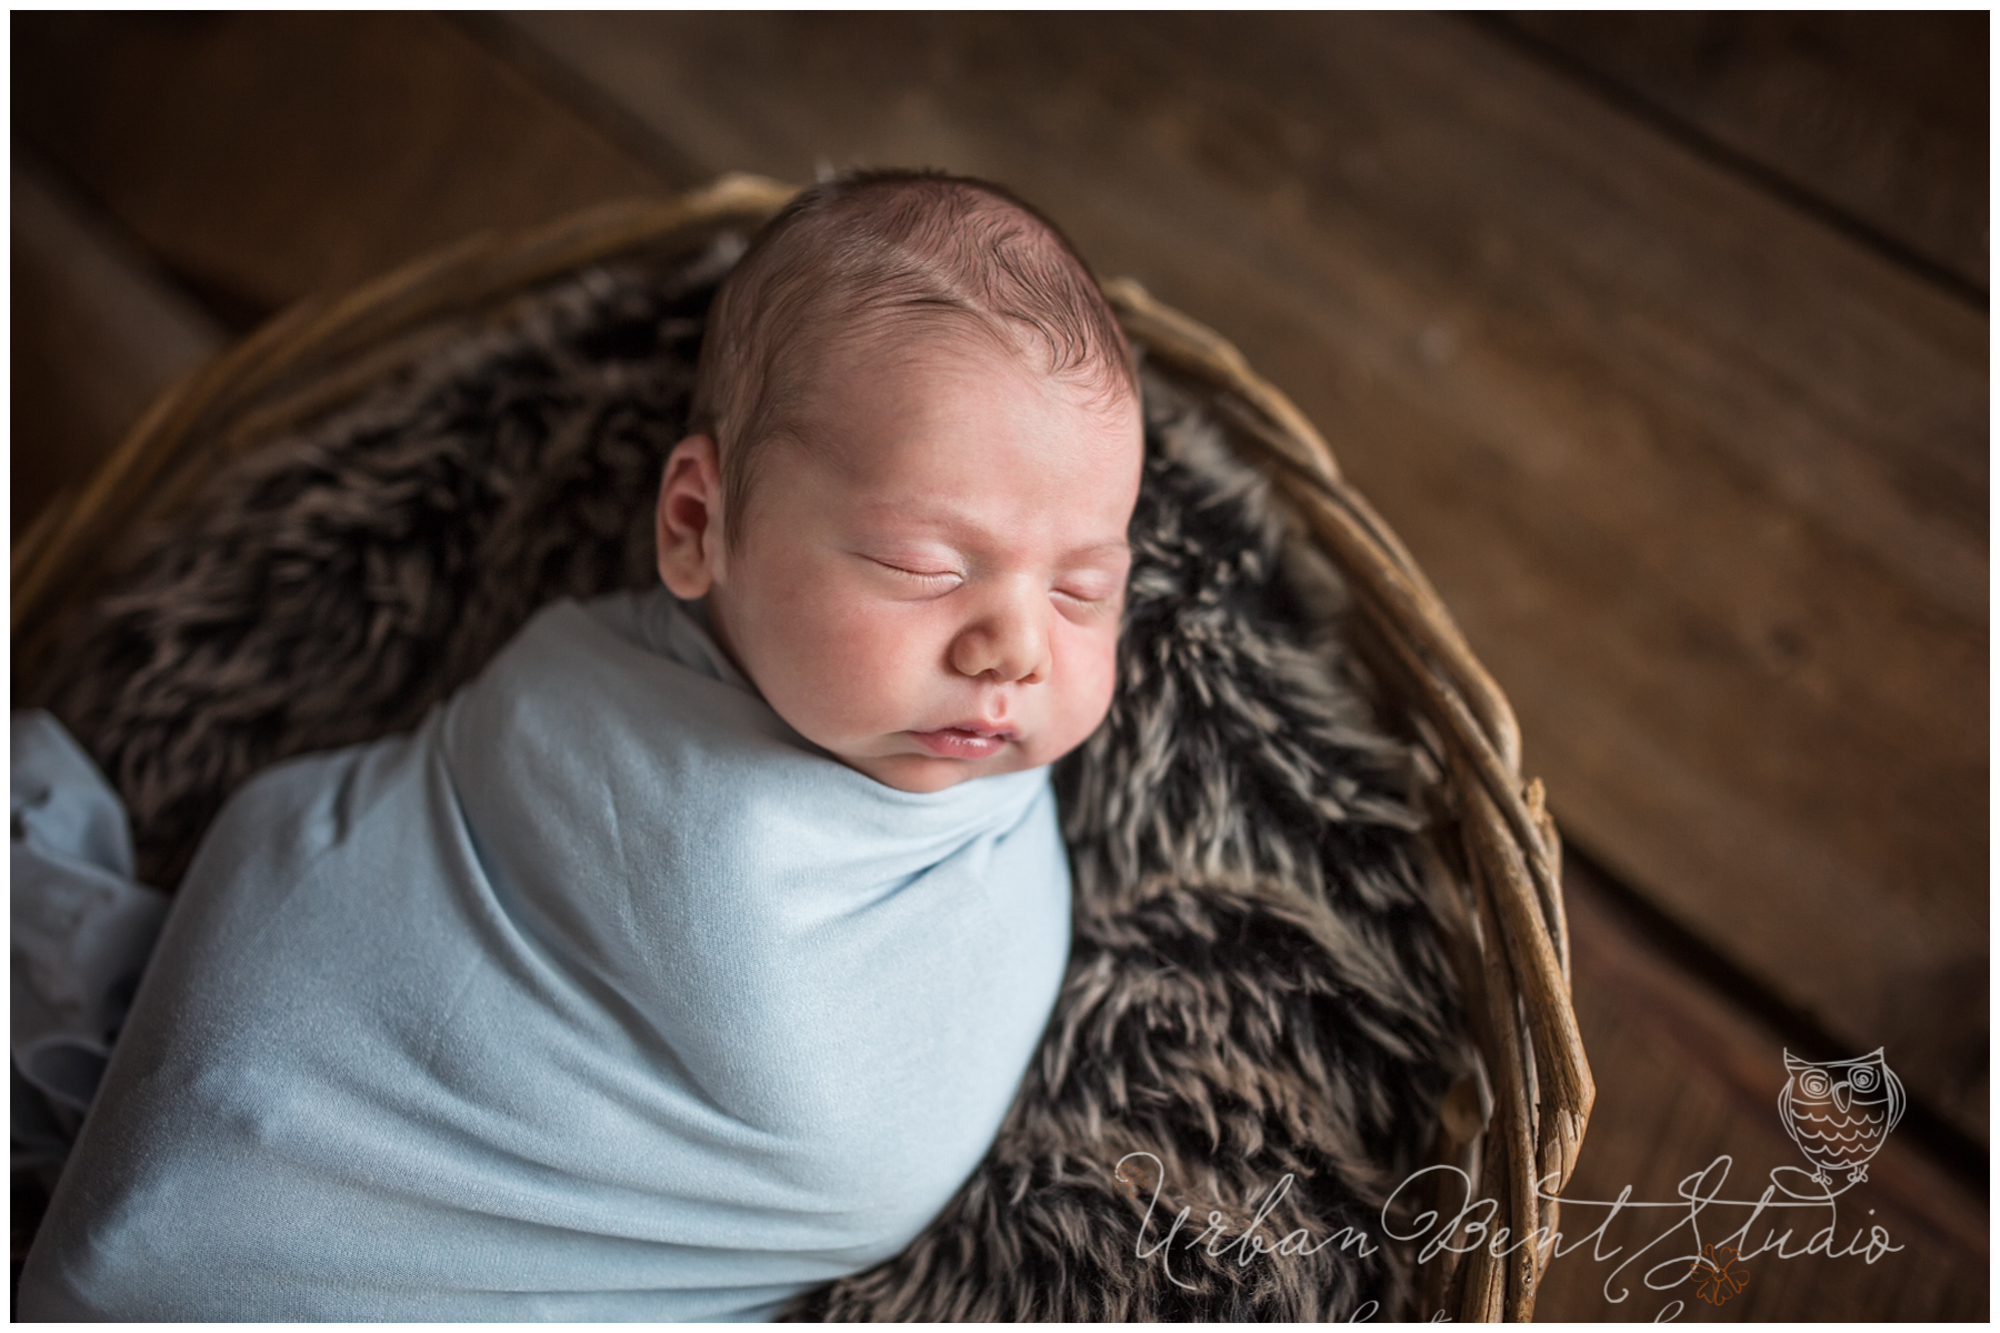 Ottawa newborn photographer, newborn photos Ottawa, baby photography, baby photos, natural light photographer, newborn photography